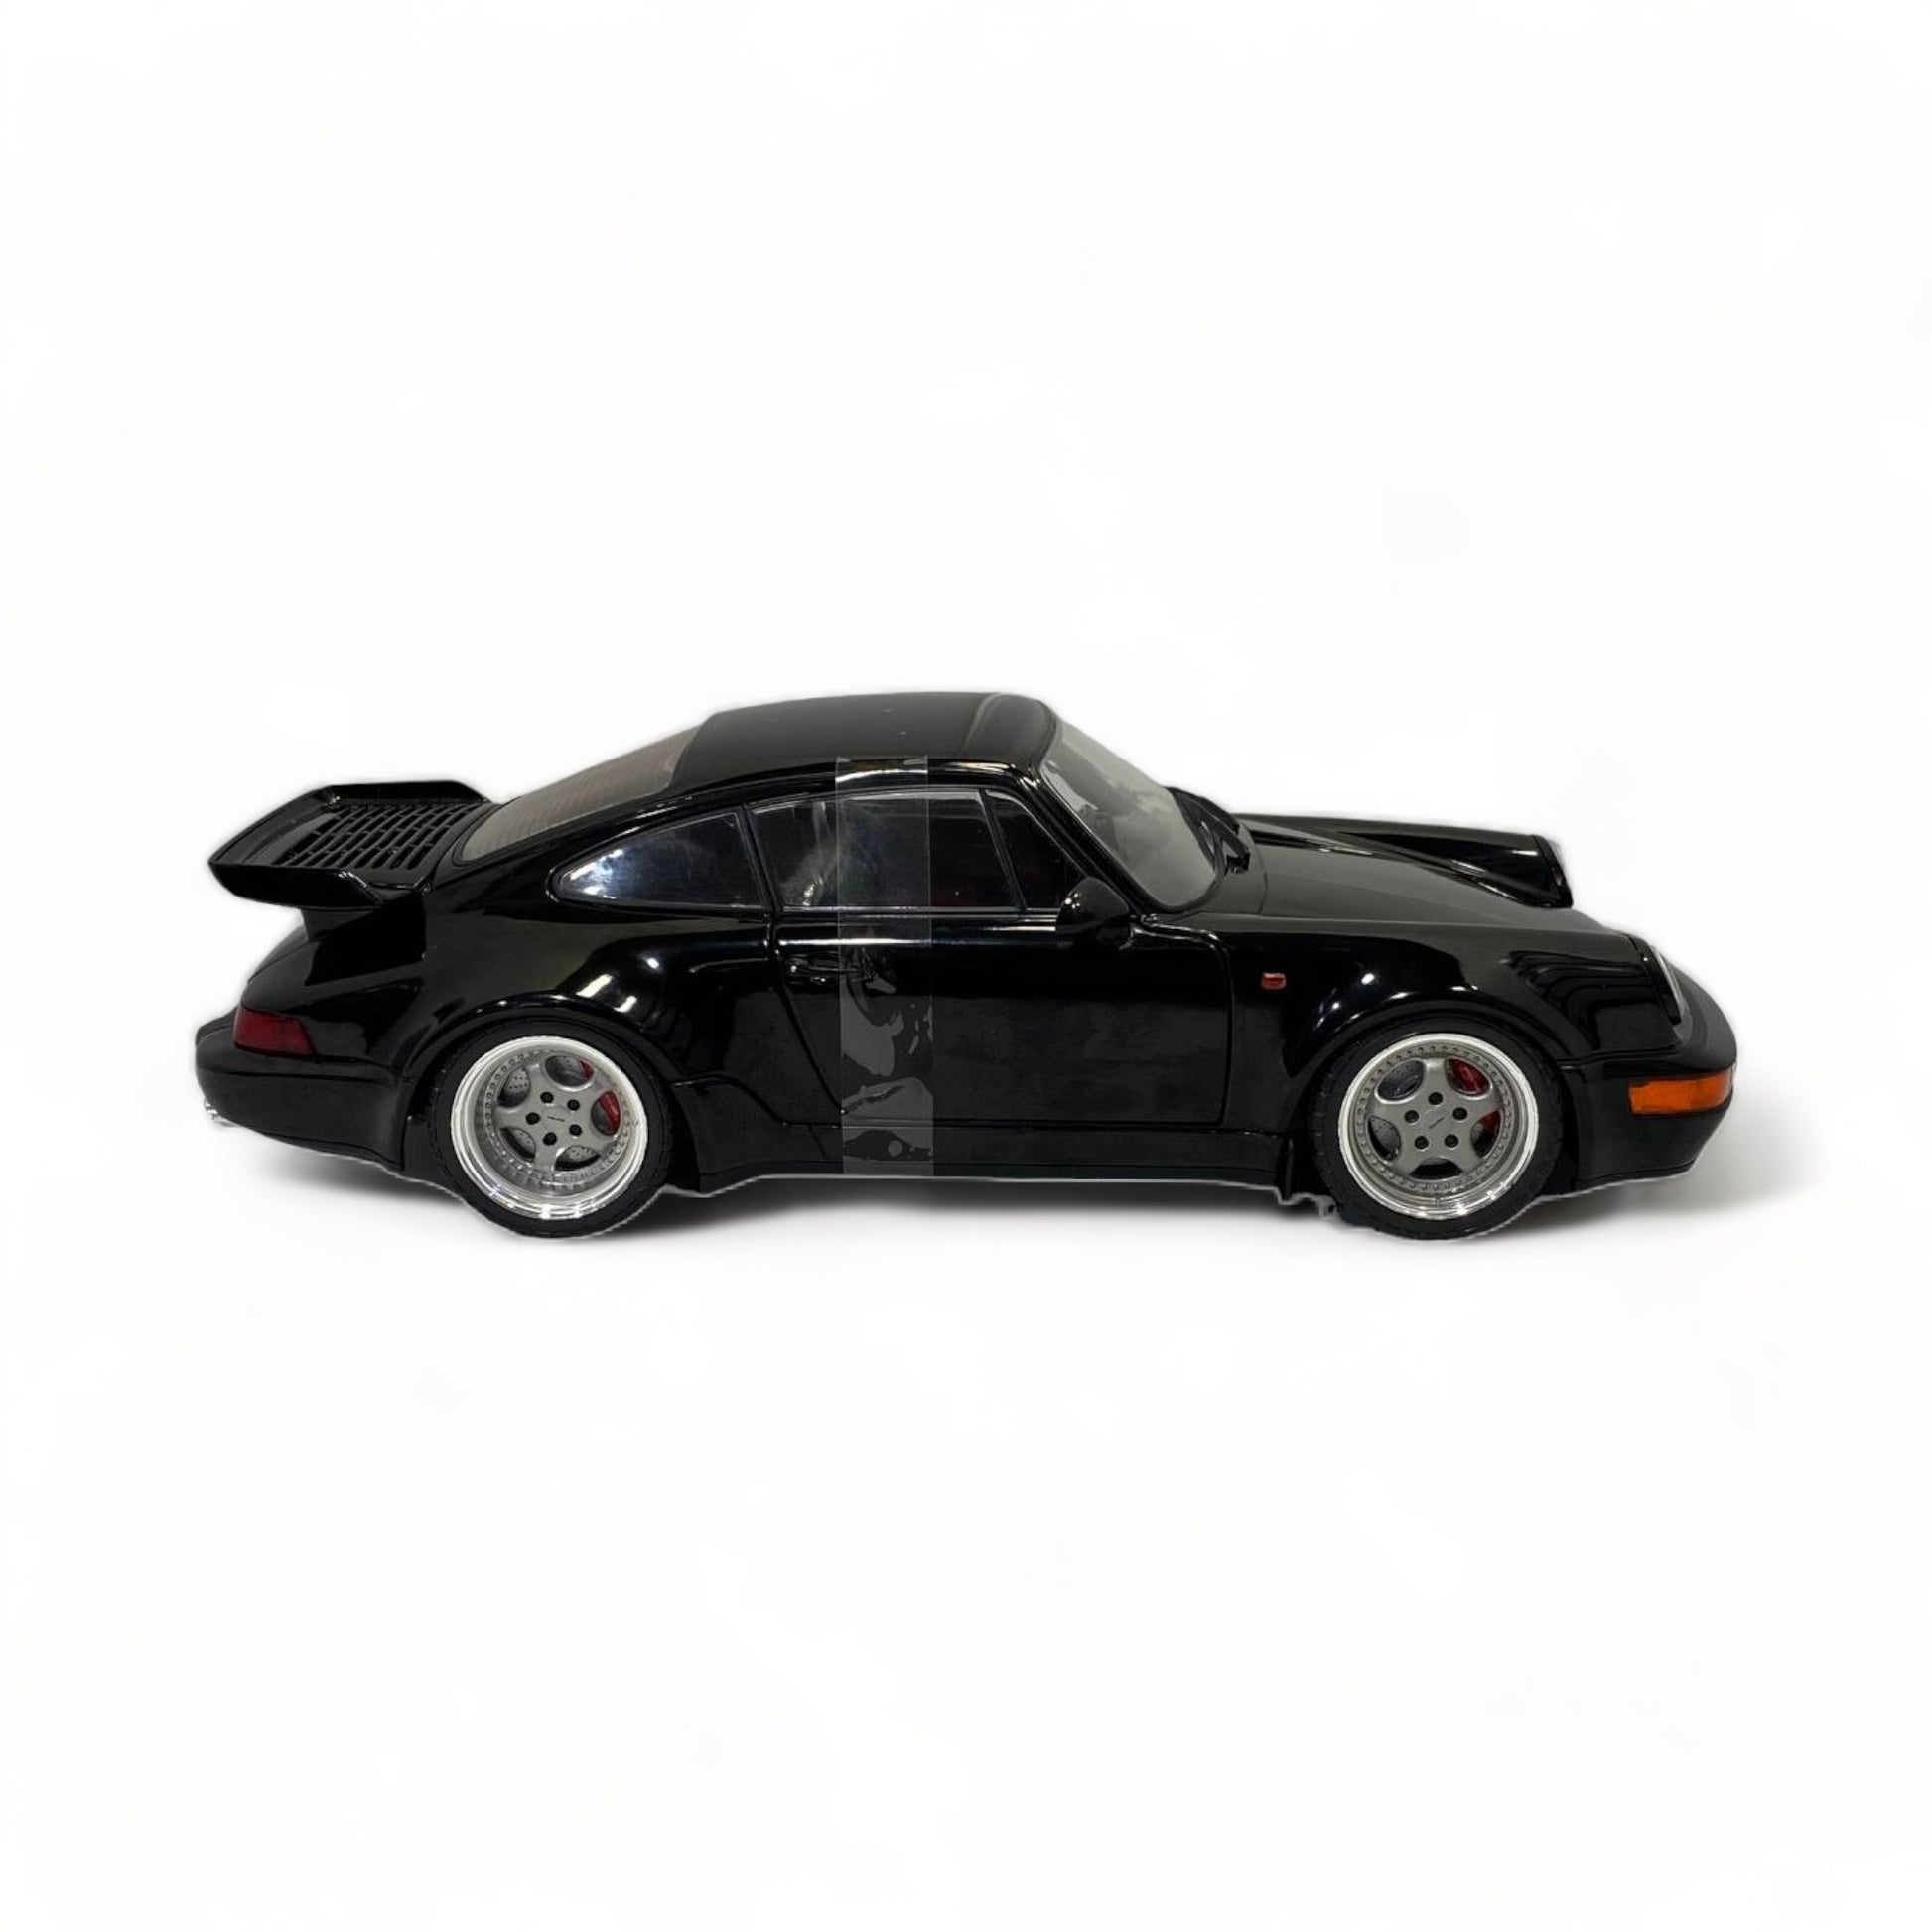 Solido 1:18 - 1 - Coche deportivo a escala - Porsche 911 (964) Turbo 1990 -  Modelo diecast con puertas que se abren. - Catawiki